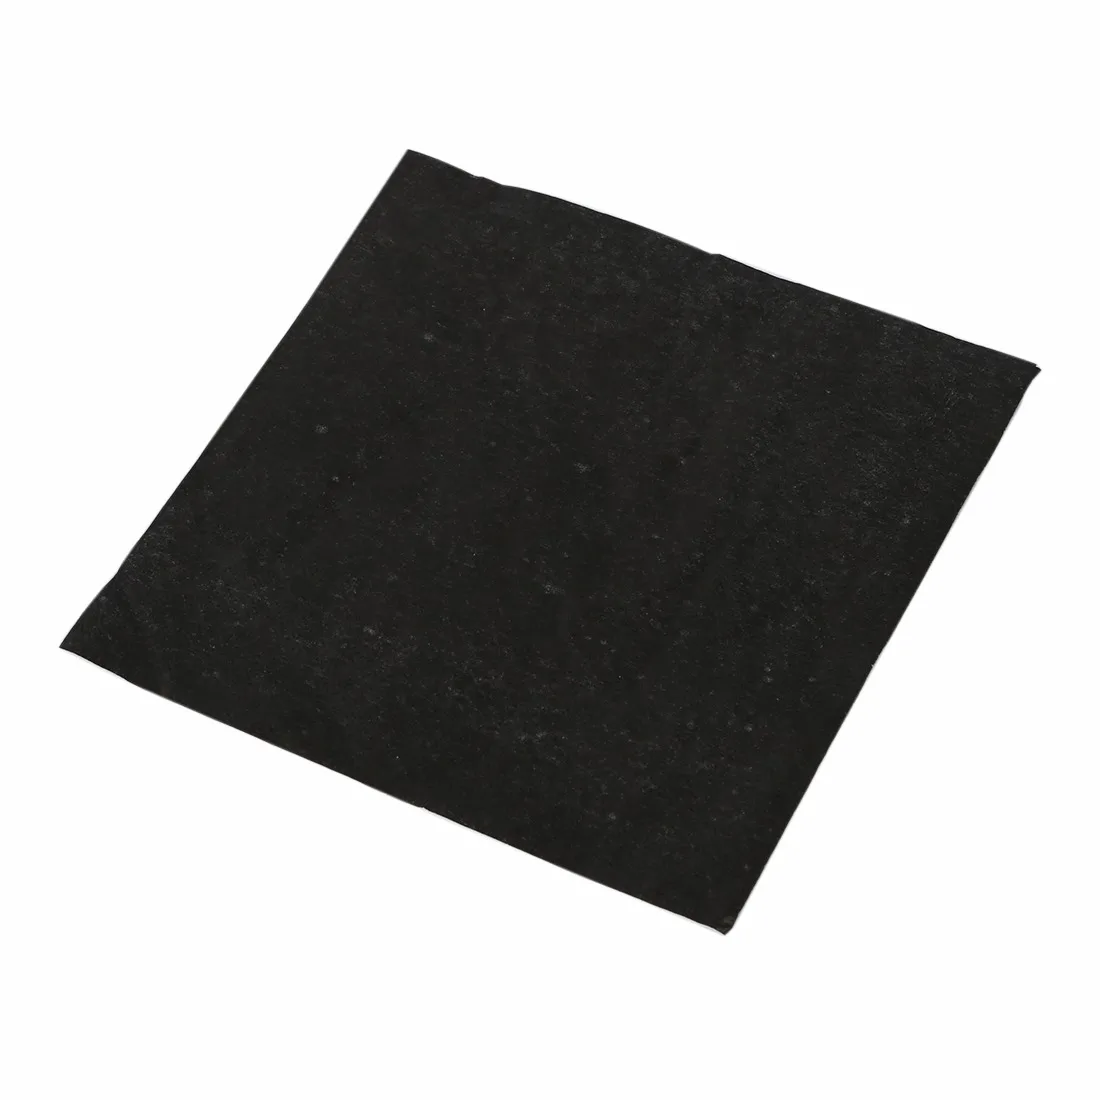 1 упаковка однотонные бумажные салфетки с рисунком черного цвета